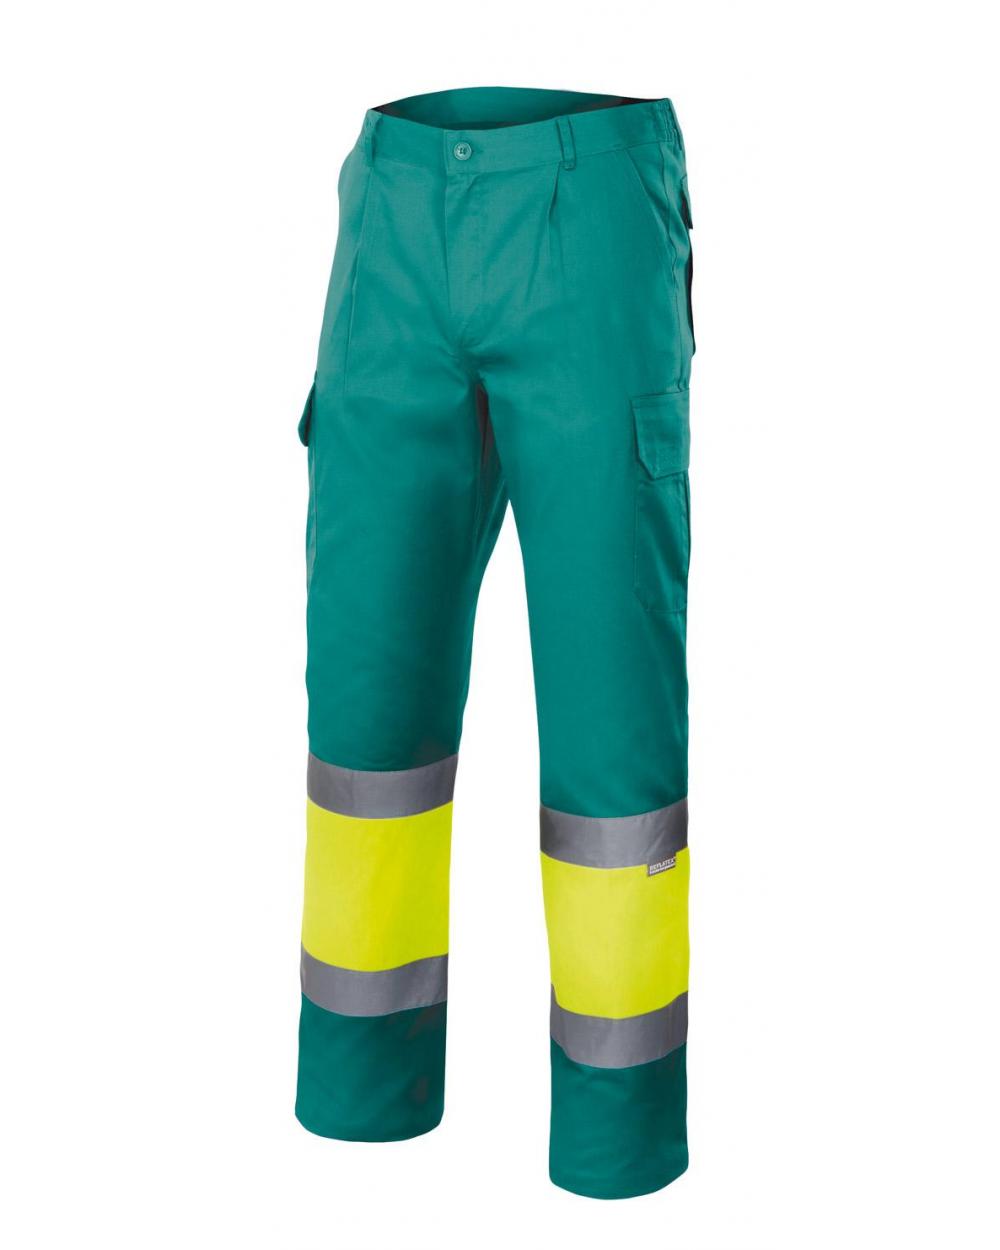 Comprar Pantalón bicolor alta visibilidad (tallas grandes) serie 157 online barato Sup Ver/Inf Ama